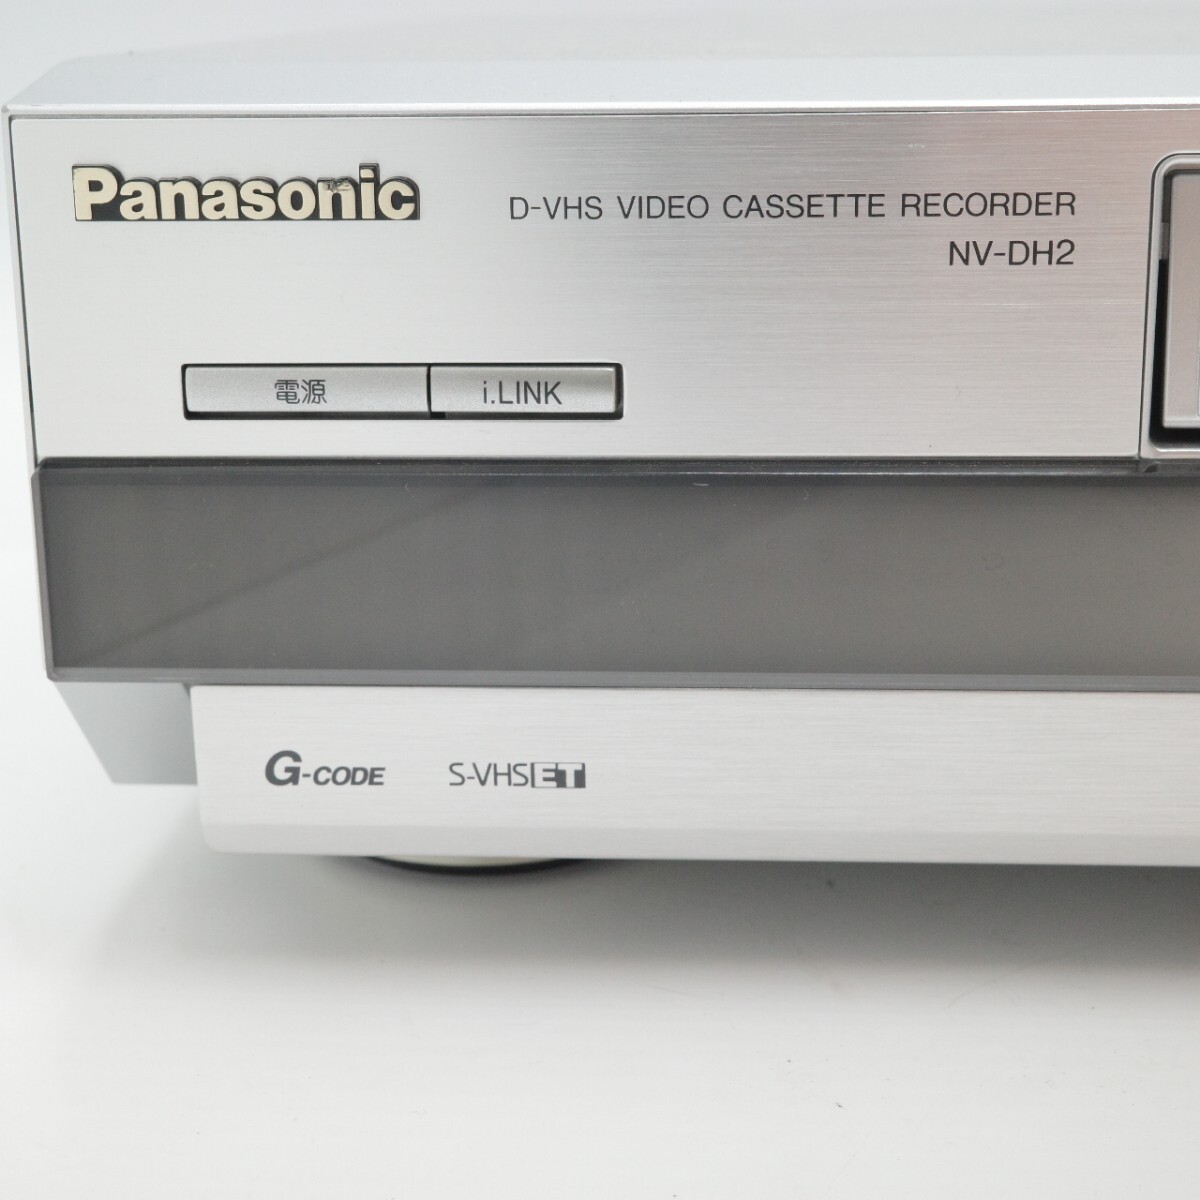 panasonic Panasonic D-VHS VIDEO видео кассета магнитофон NV-DH2 серебряный 2003 год производства простой рабочее состояние подтверждено 